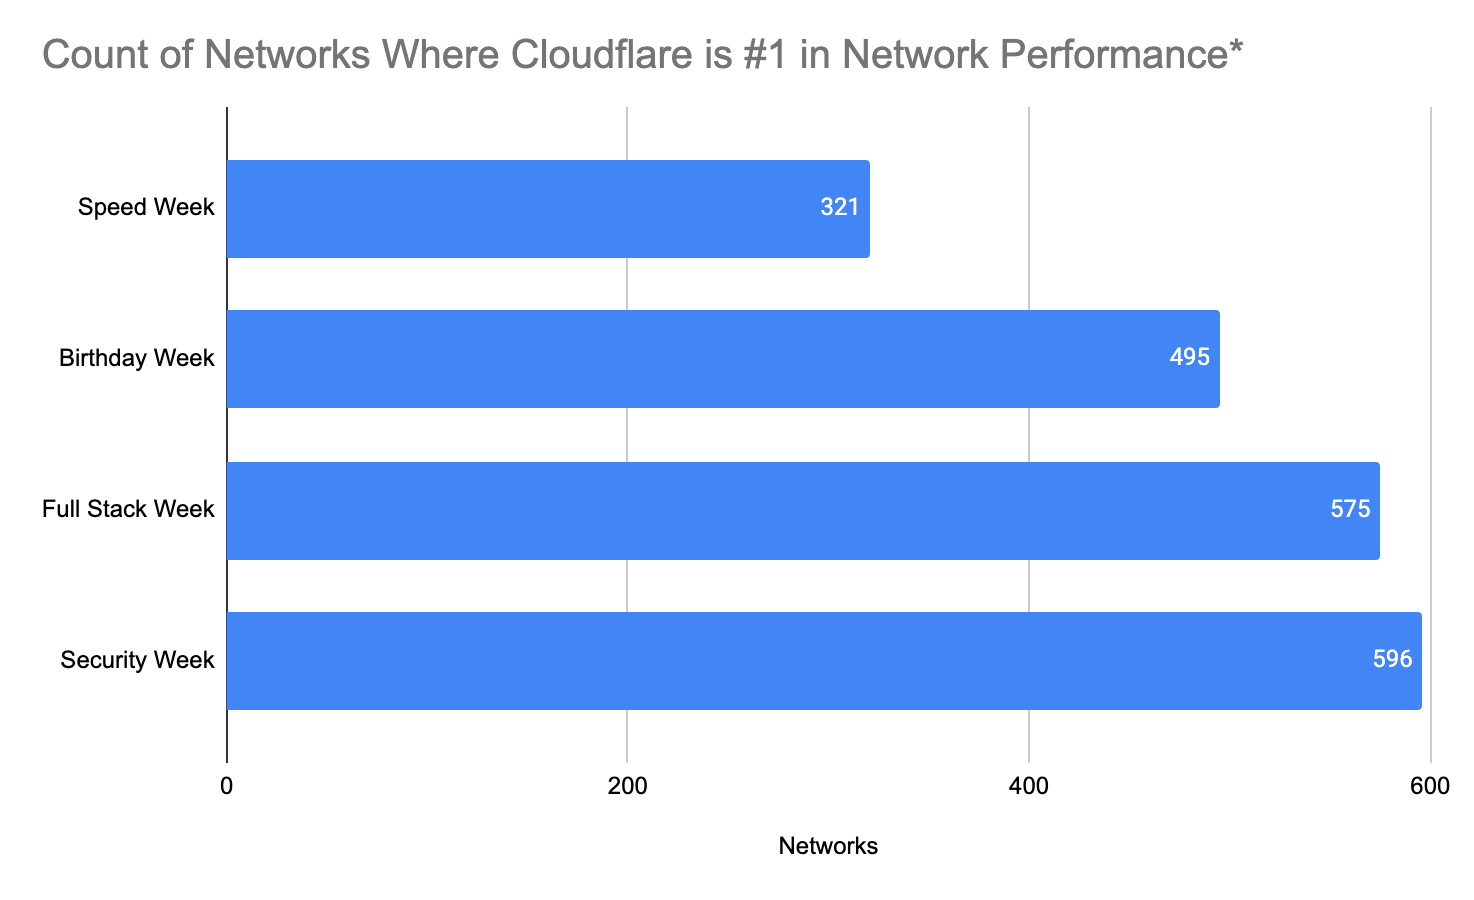 Network performance update: Security Week